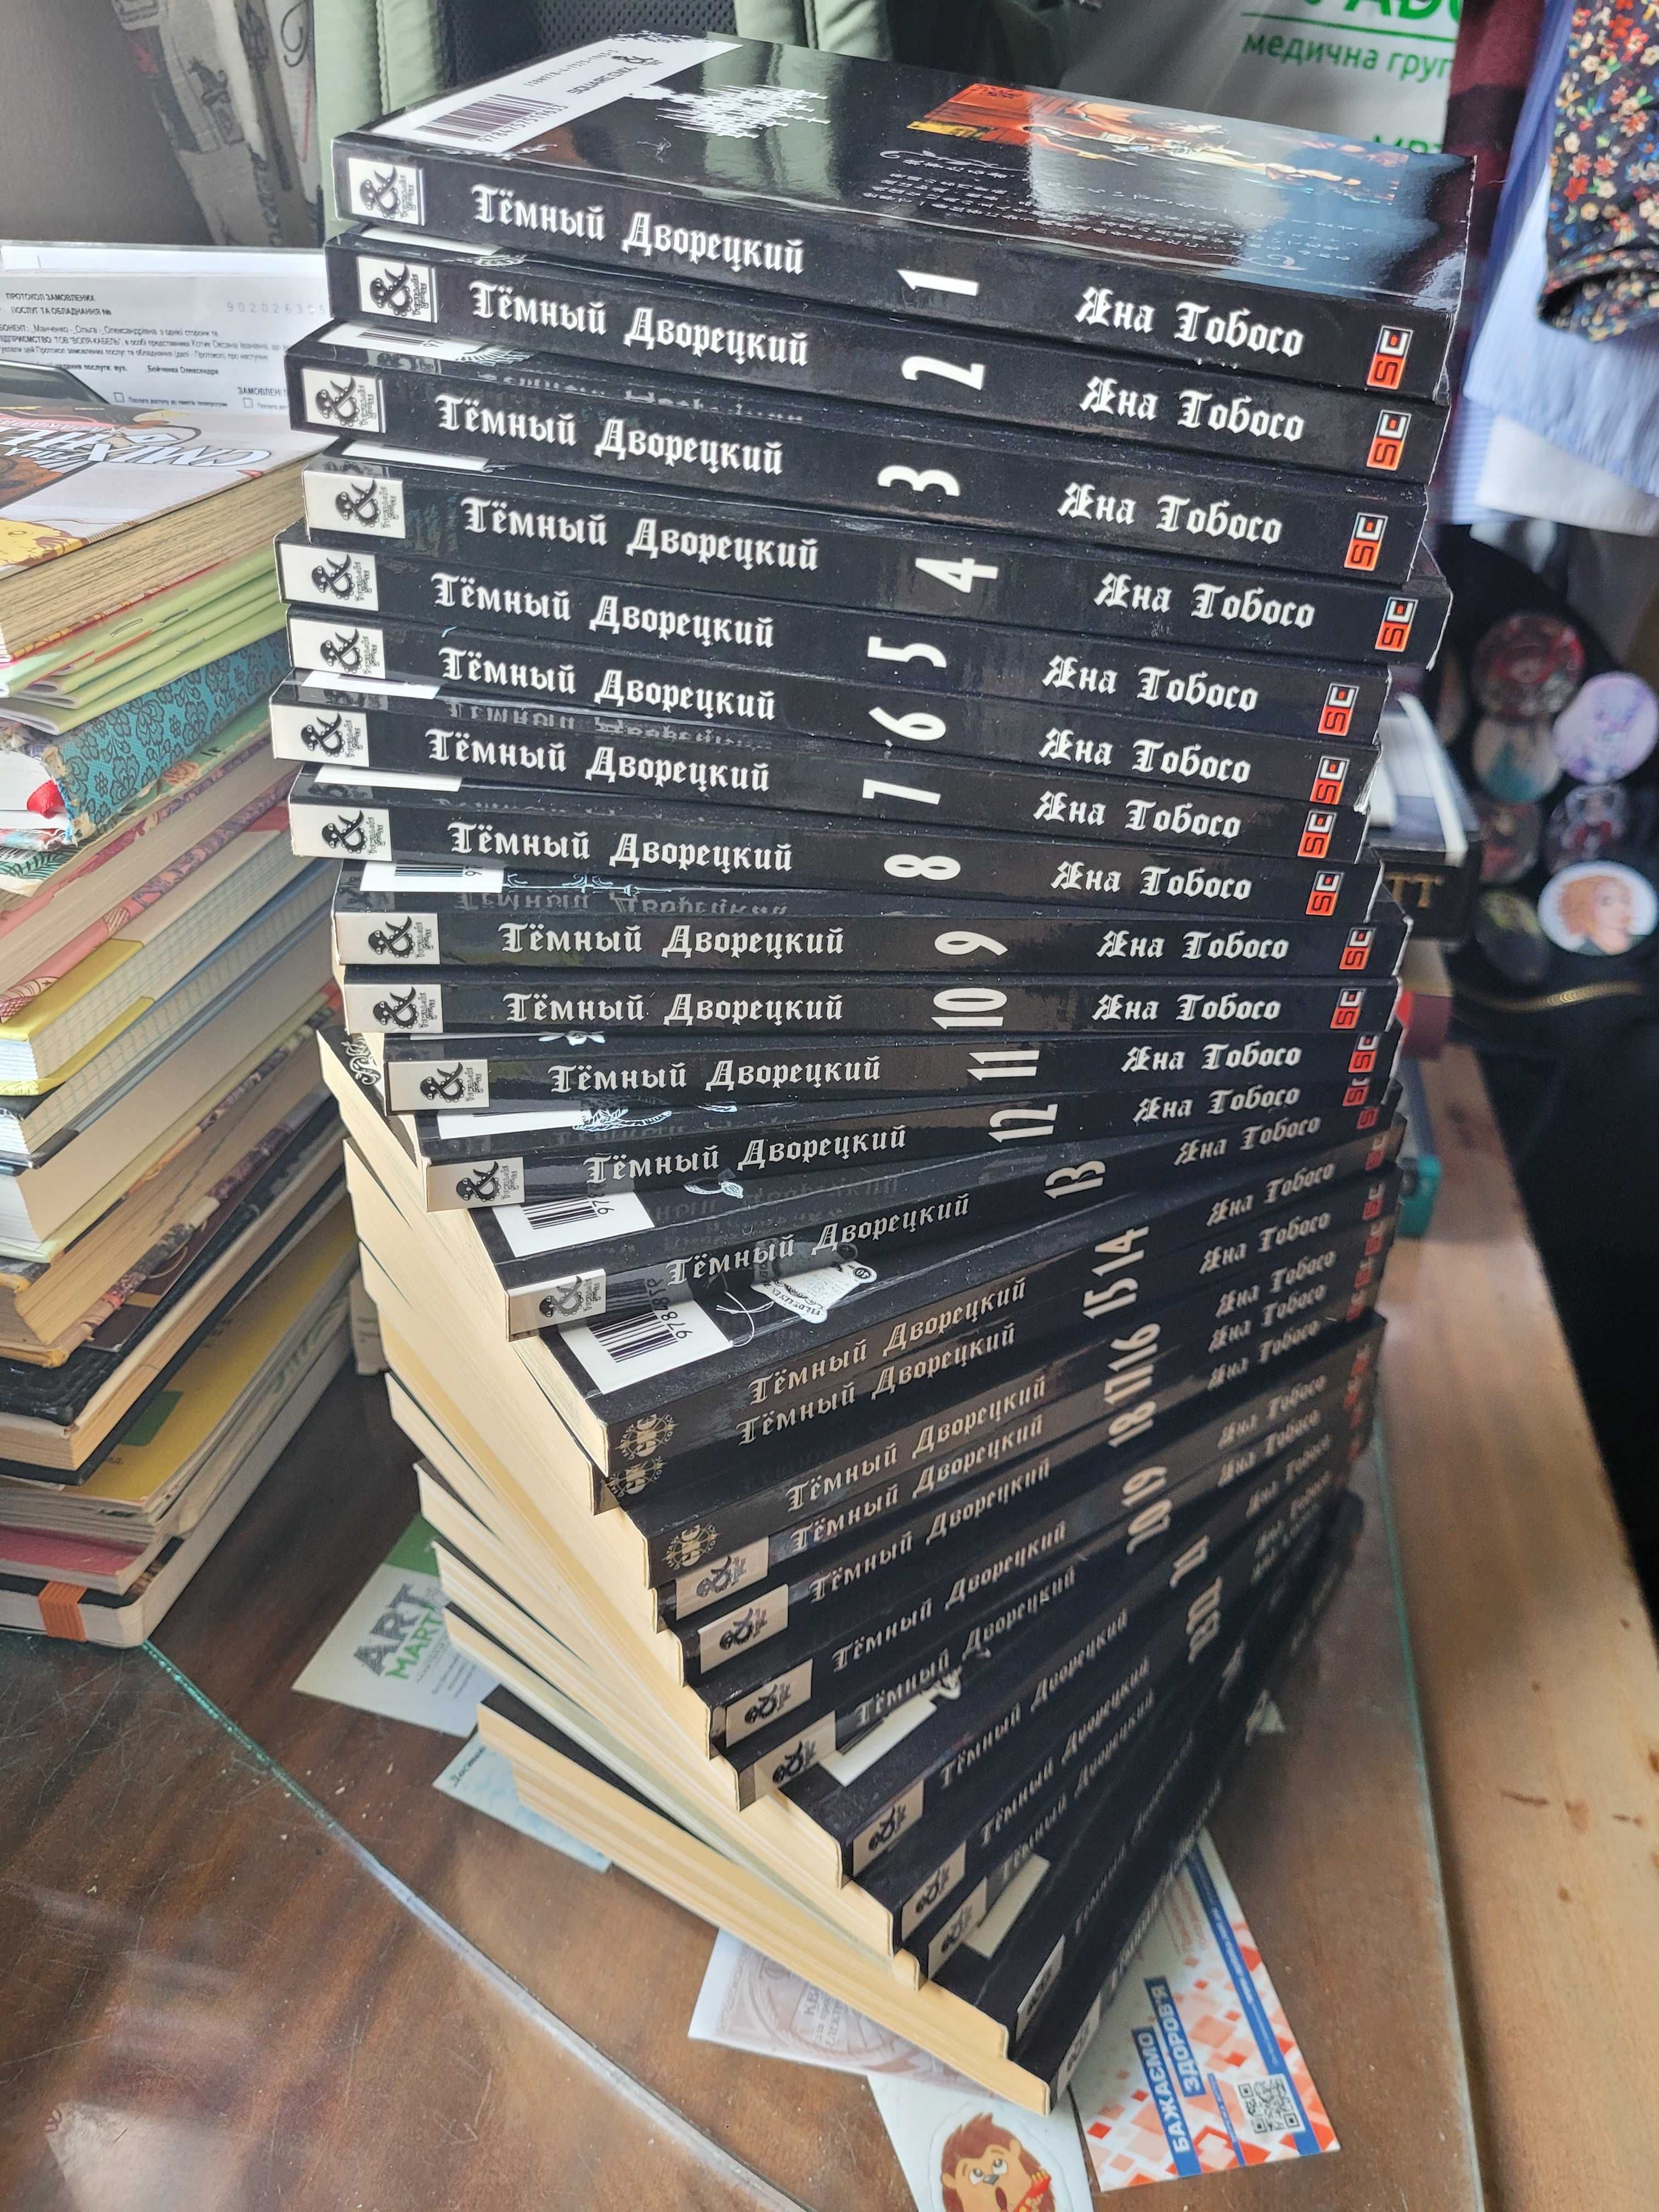 Продам комплект манги "Темный дворецкий" от Tentacle House (25 томов)